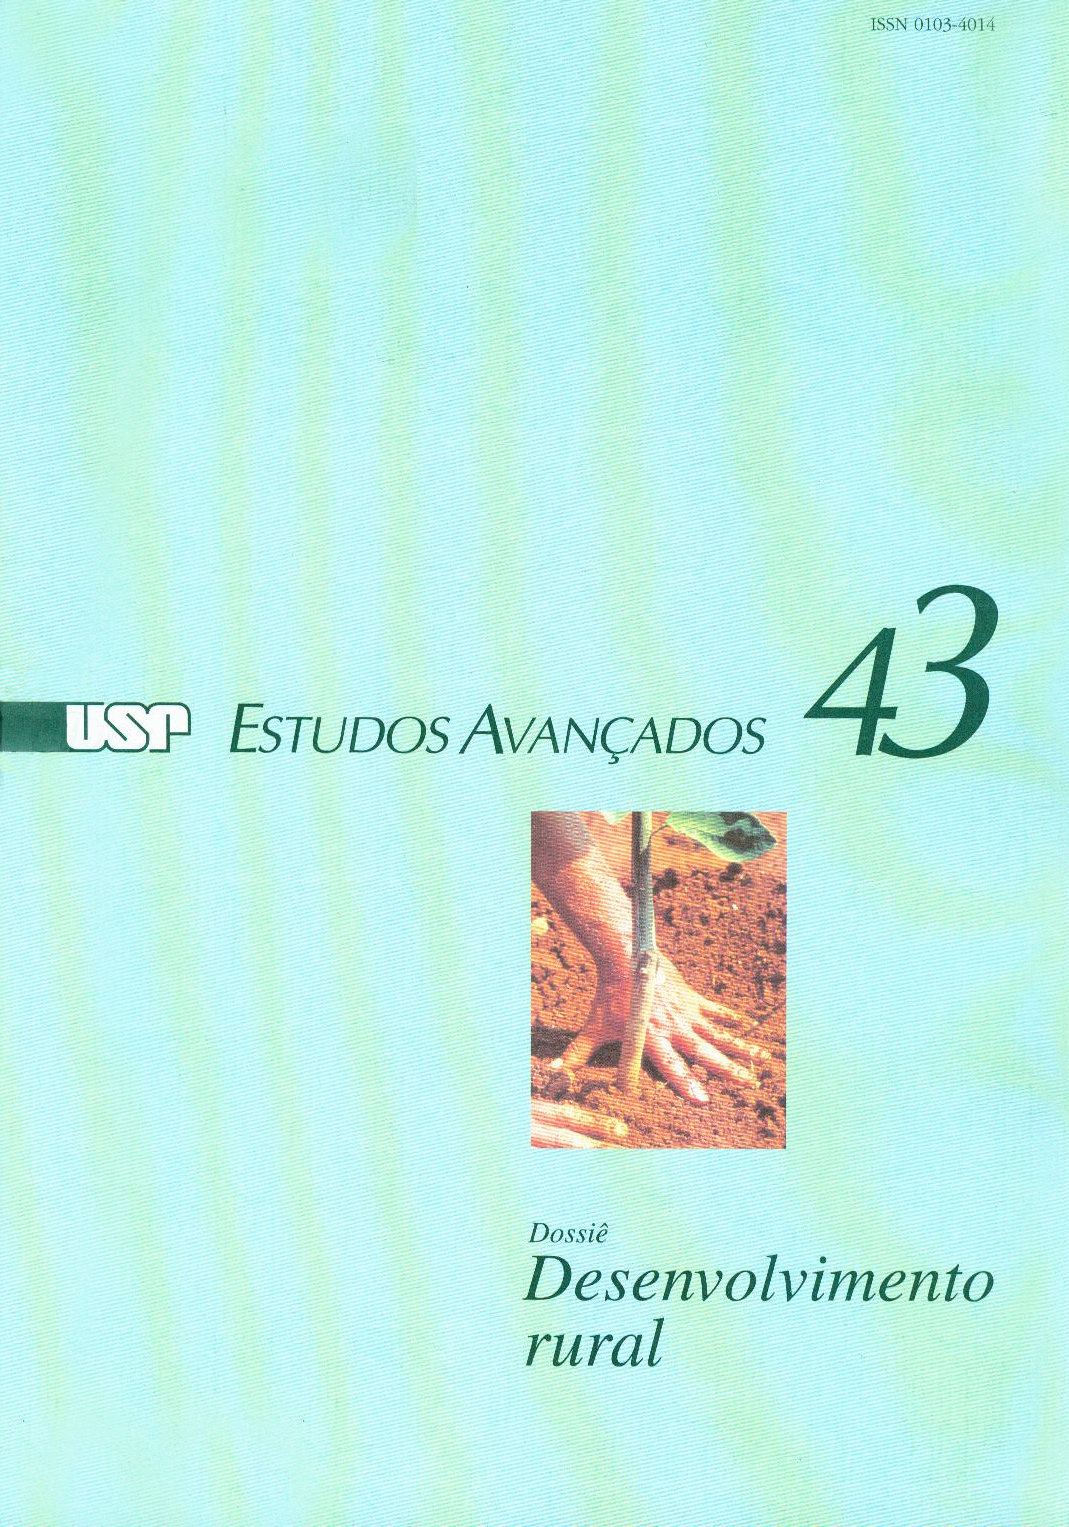 					Ver Vol. 15 Núm. 43 (2001): Dossiê Desenvolvimento Rural
				